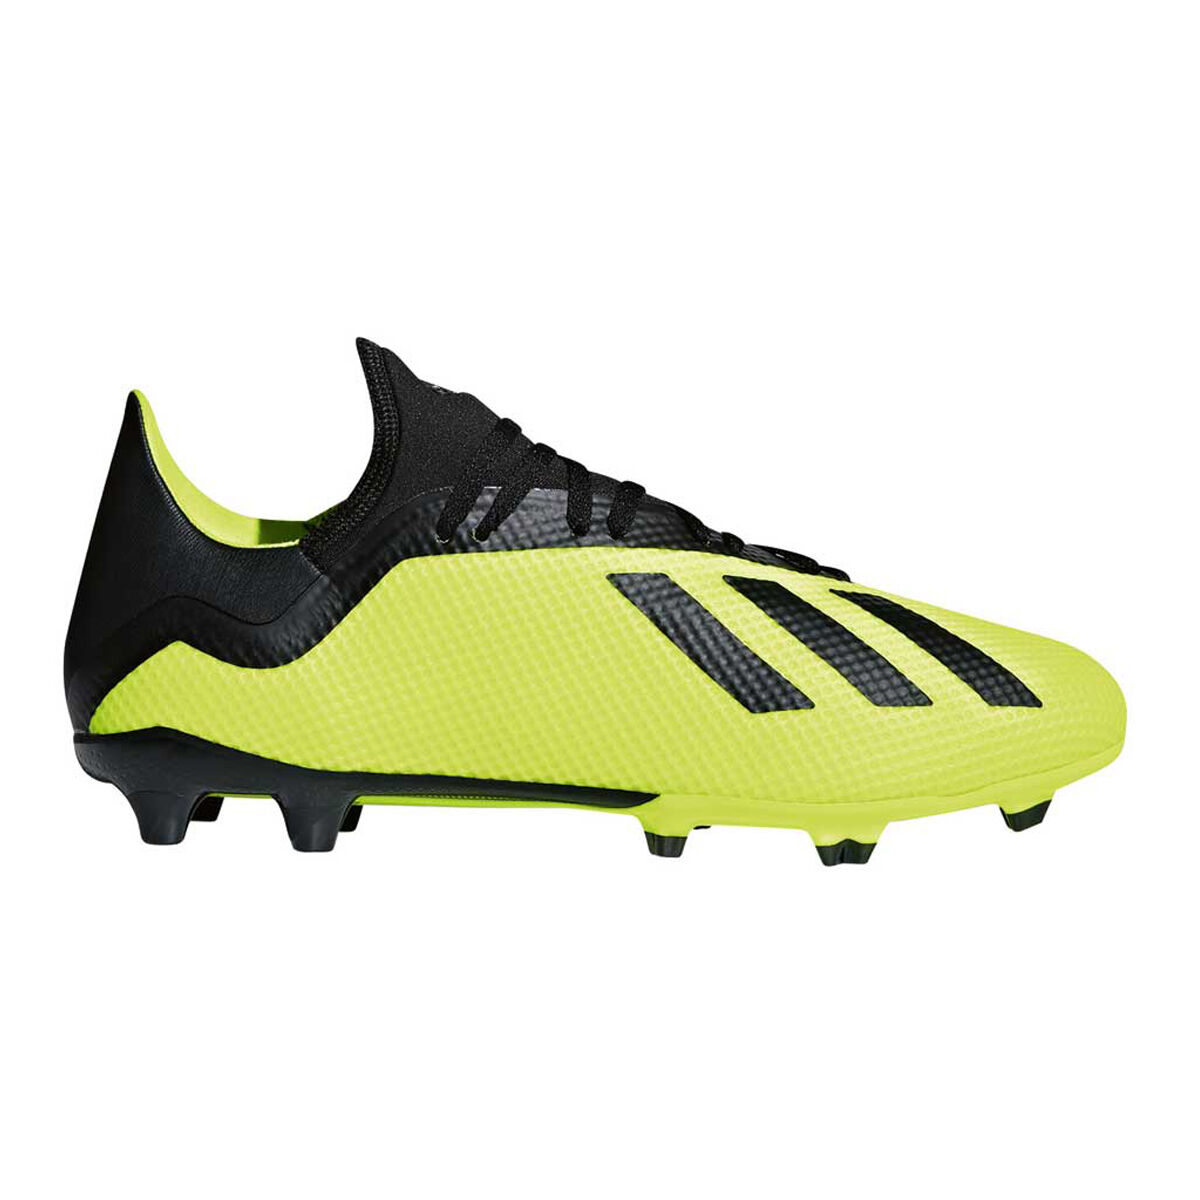 rebel sport soccer shoes